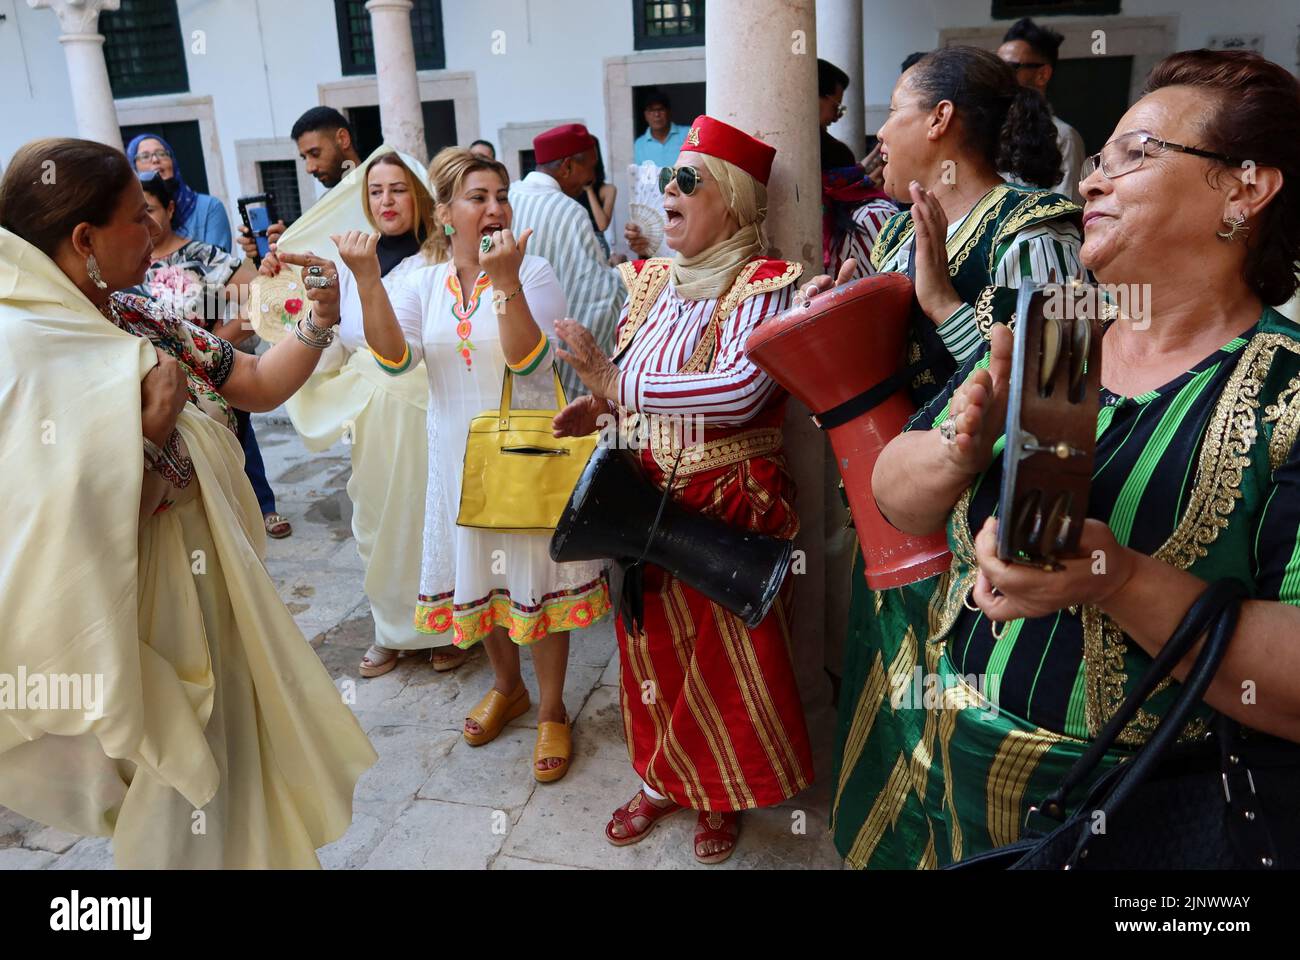 Las mujeres que visten ropa tradicional cantan y hacen un gesto antes de una marcha para celebrar el Día Nacional de la Mujer en Túnez, Túnez 13 de agosto de 2022. REUTERS/Jihed Abillaoui Foto de stock